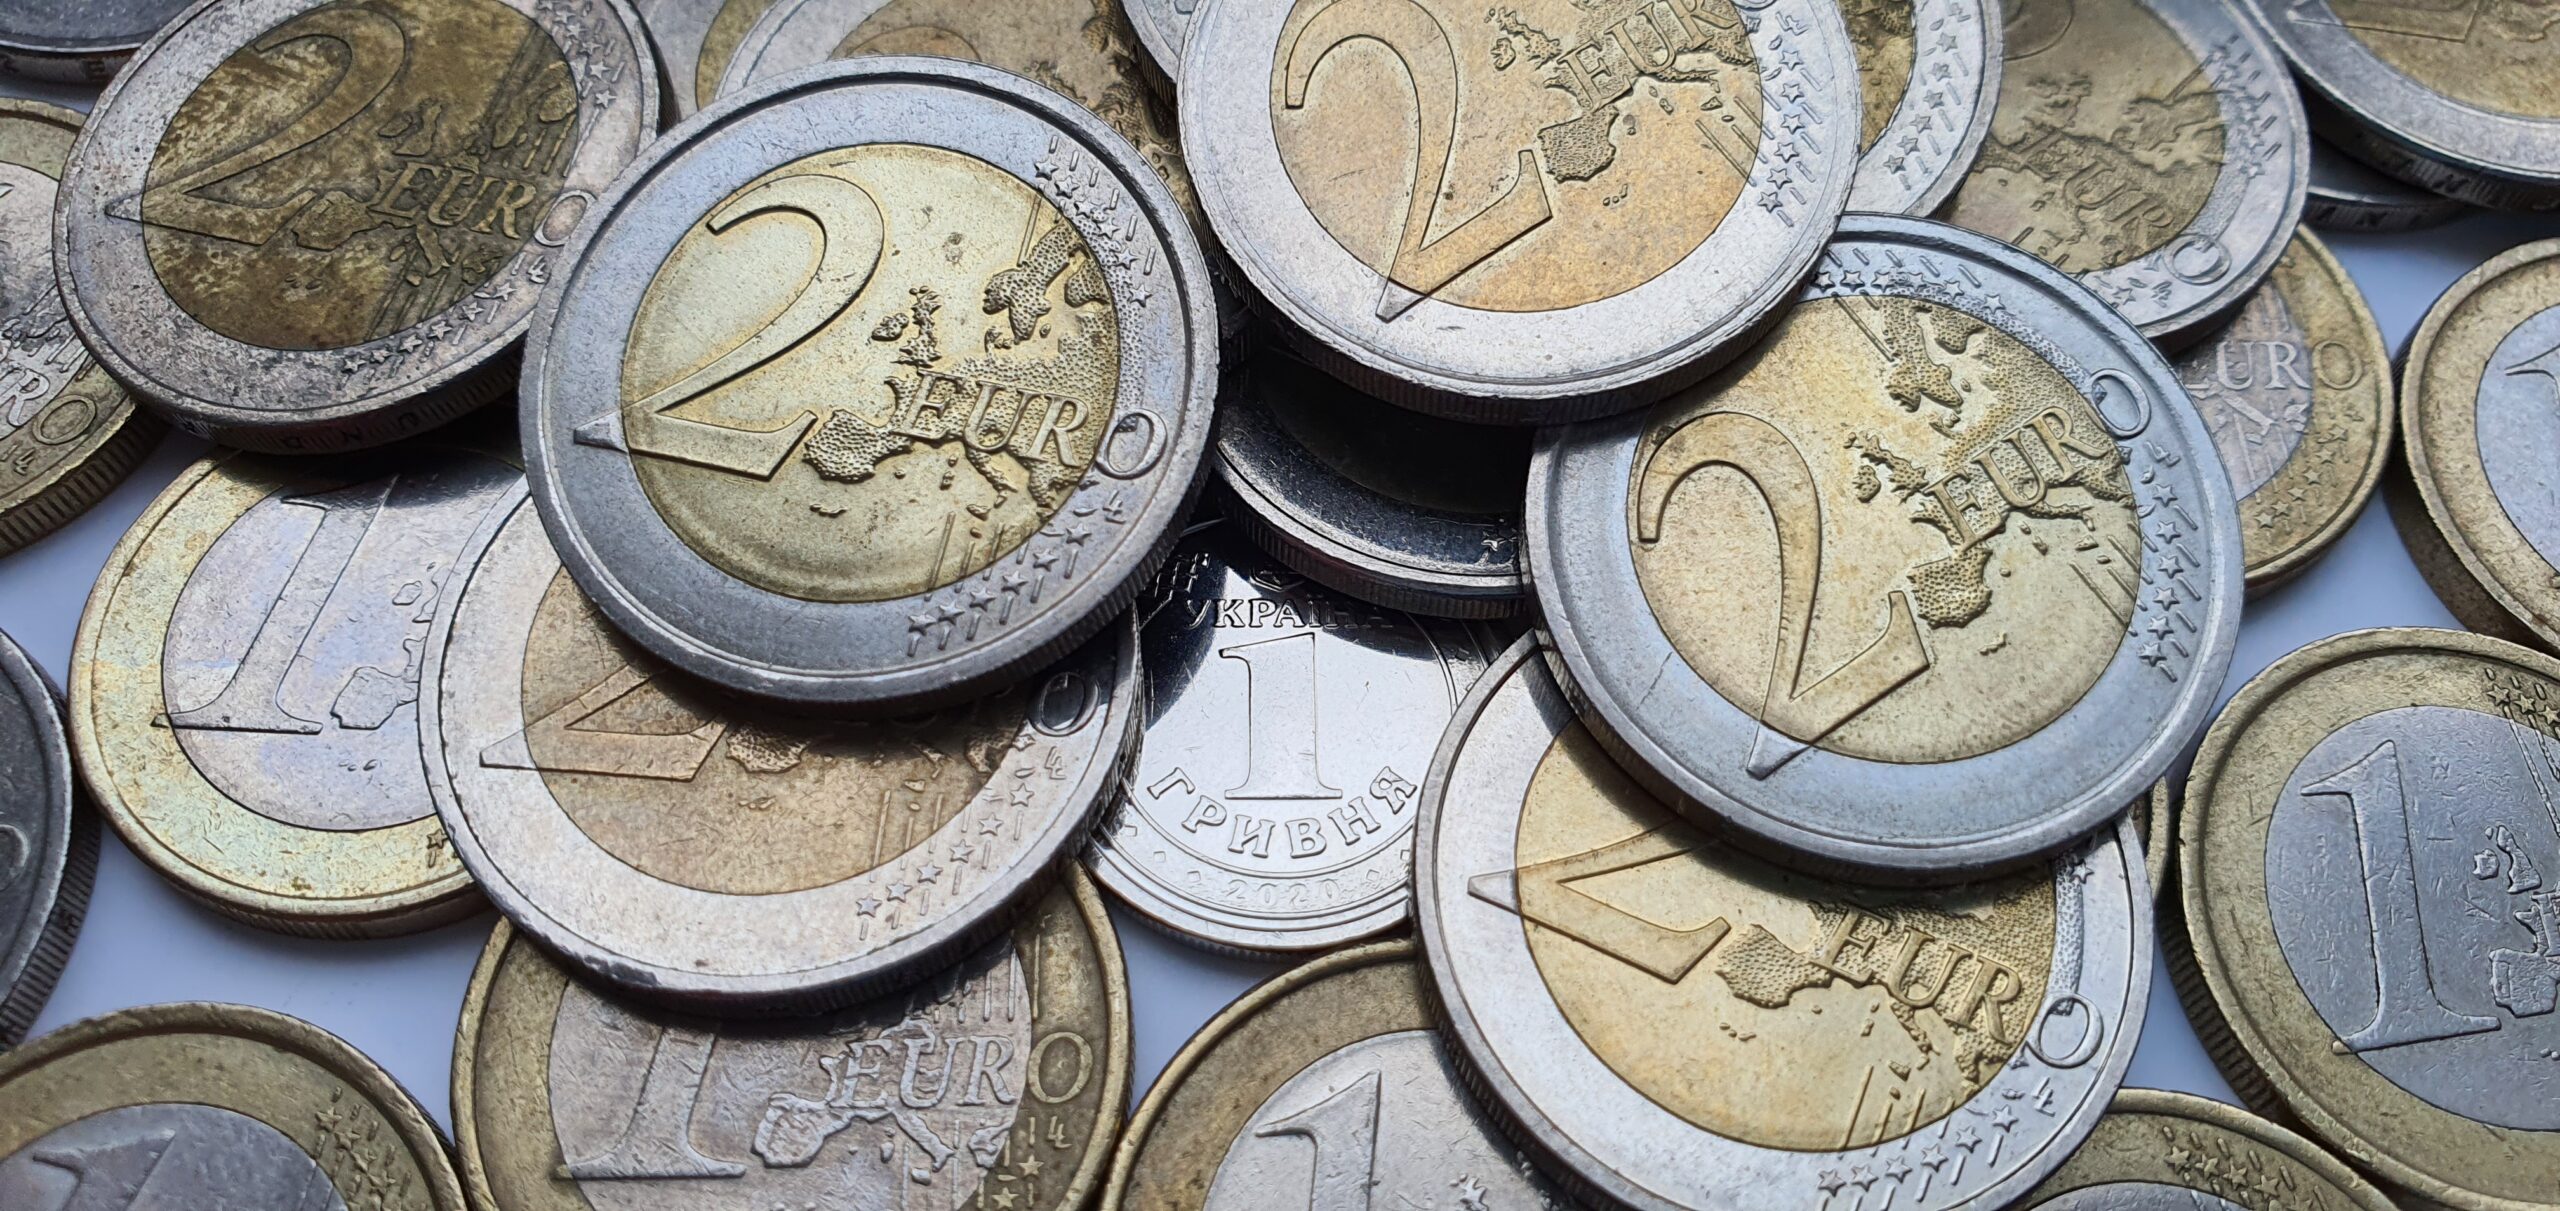 Moneta da 2 Euro con Dante: ecco quale può valere tantissimi soldi